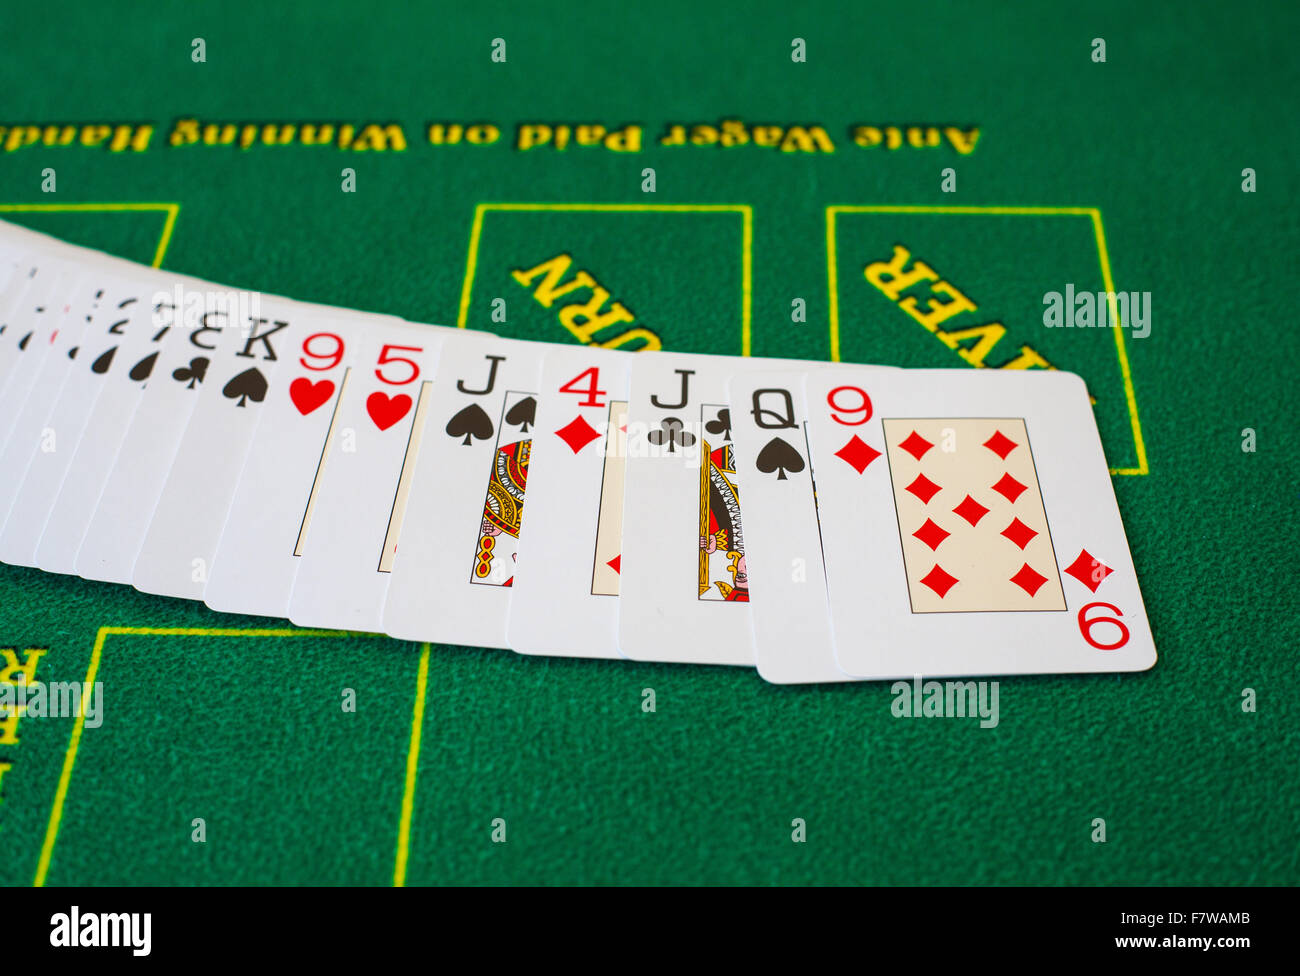 Cartes françaises pour le Texas hold'em sur une table de poker de casino Jeu de hasard risque de pari Banque D'Images